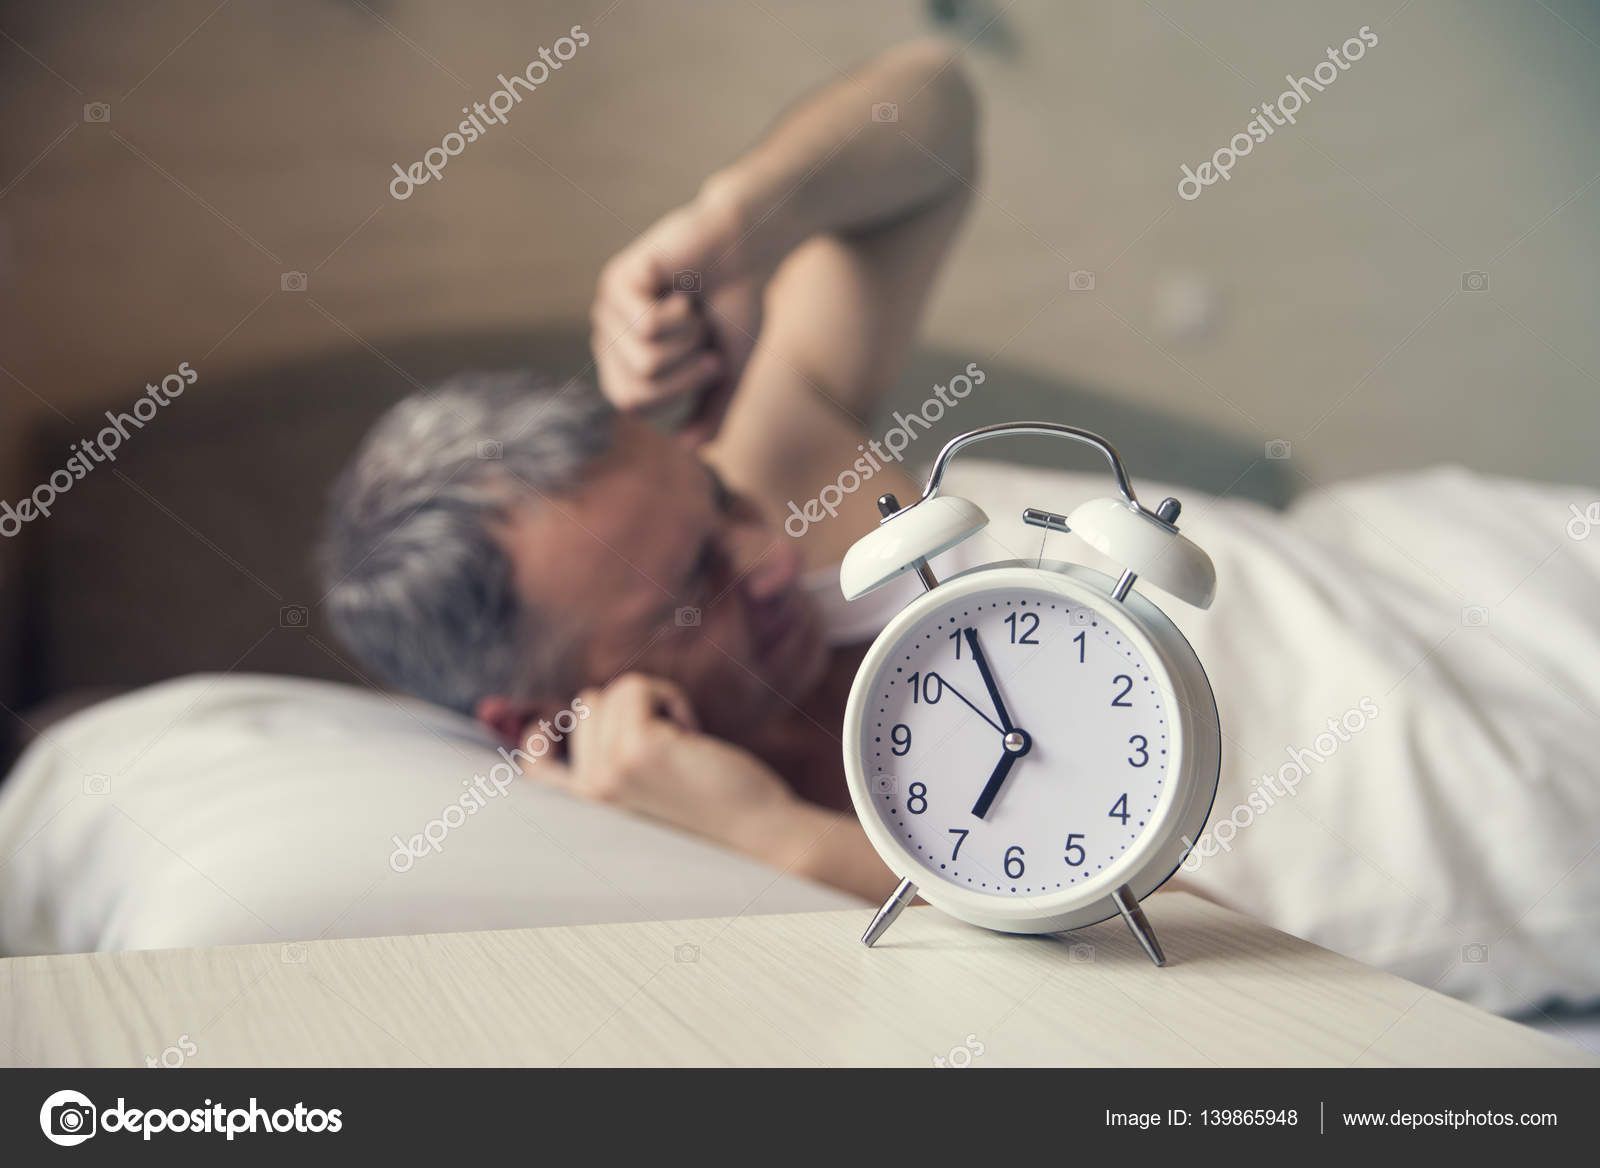 Скоро наступит утро. Человек будильник. Человек в постели утро. Человек проснулся. Спящий человек с будильником.